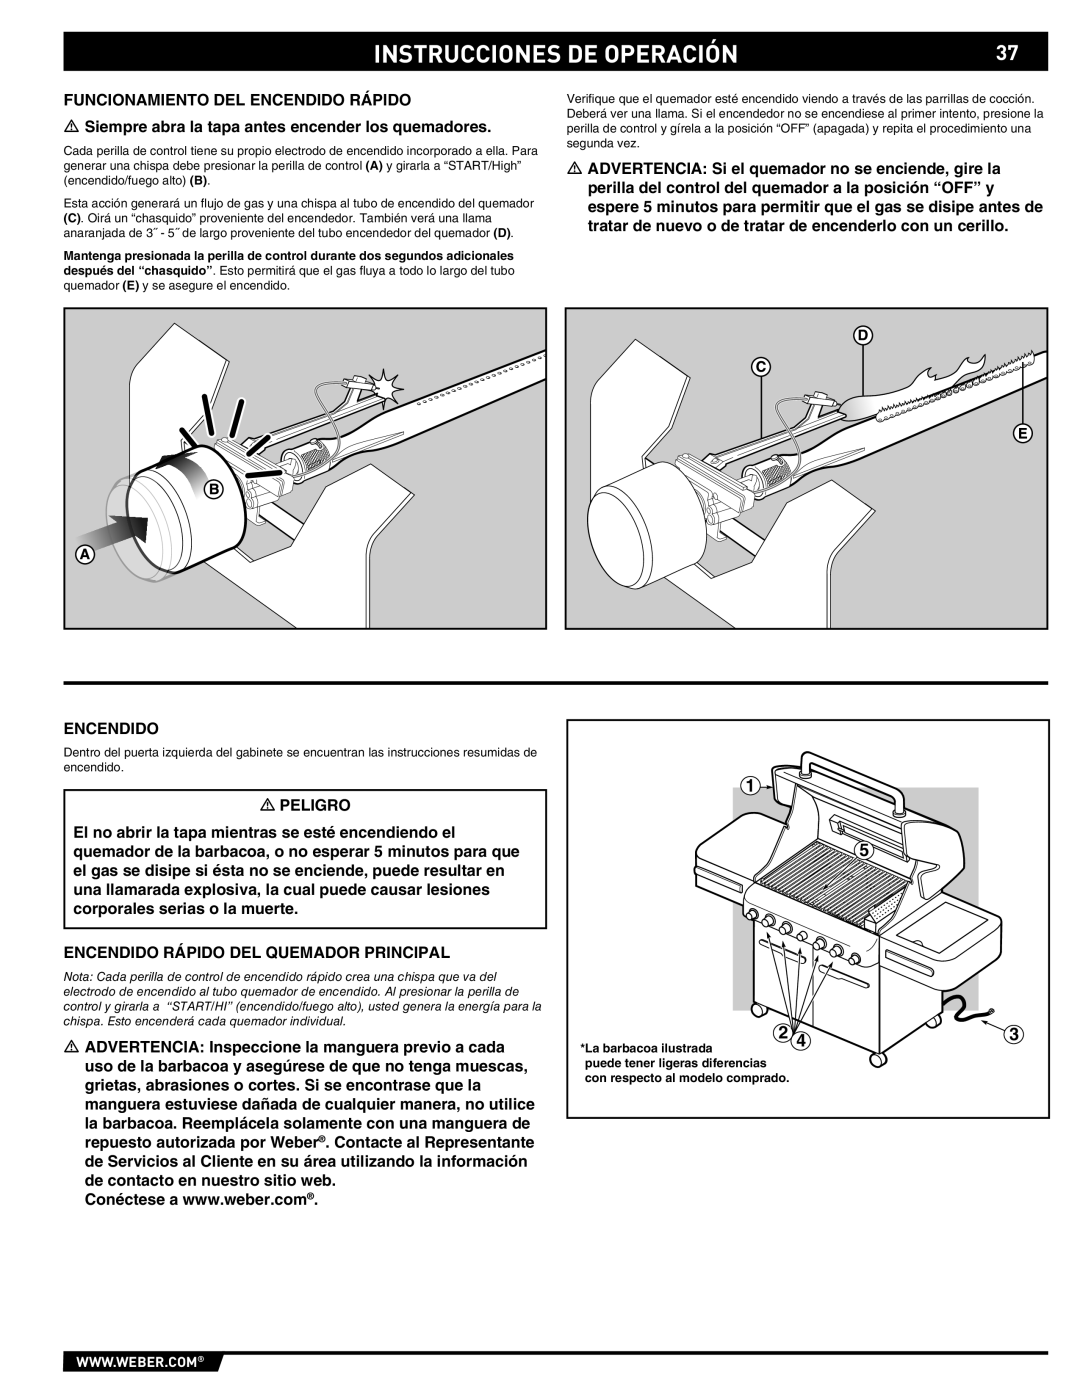 Weber S-470TM manual Instrucciones De Operación, La barbacoa ilustrada 